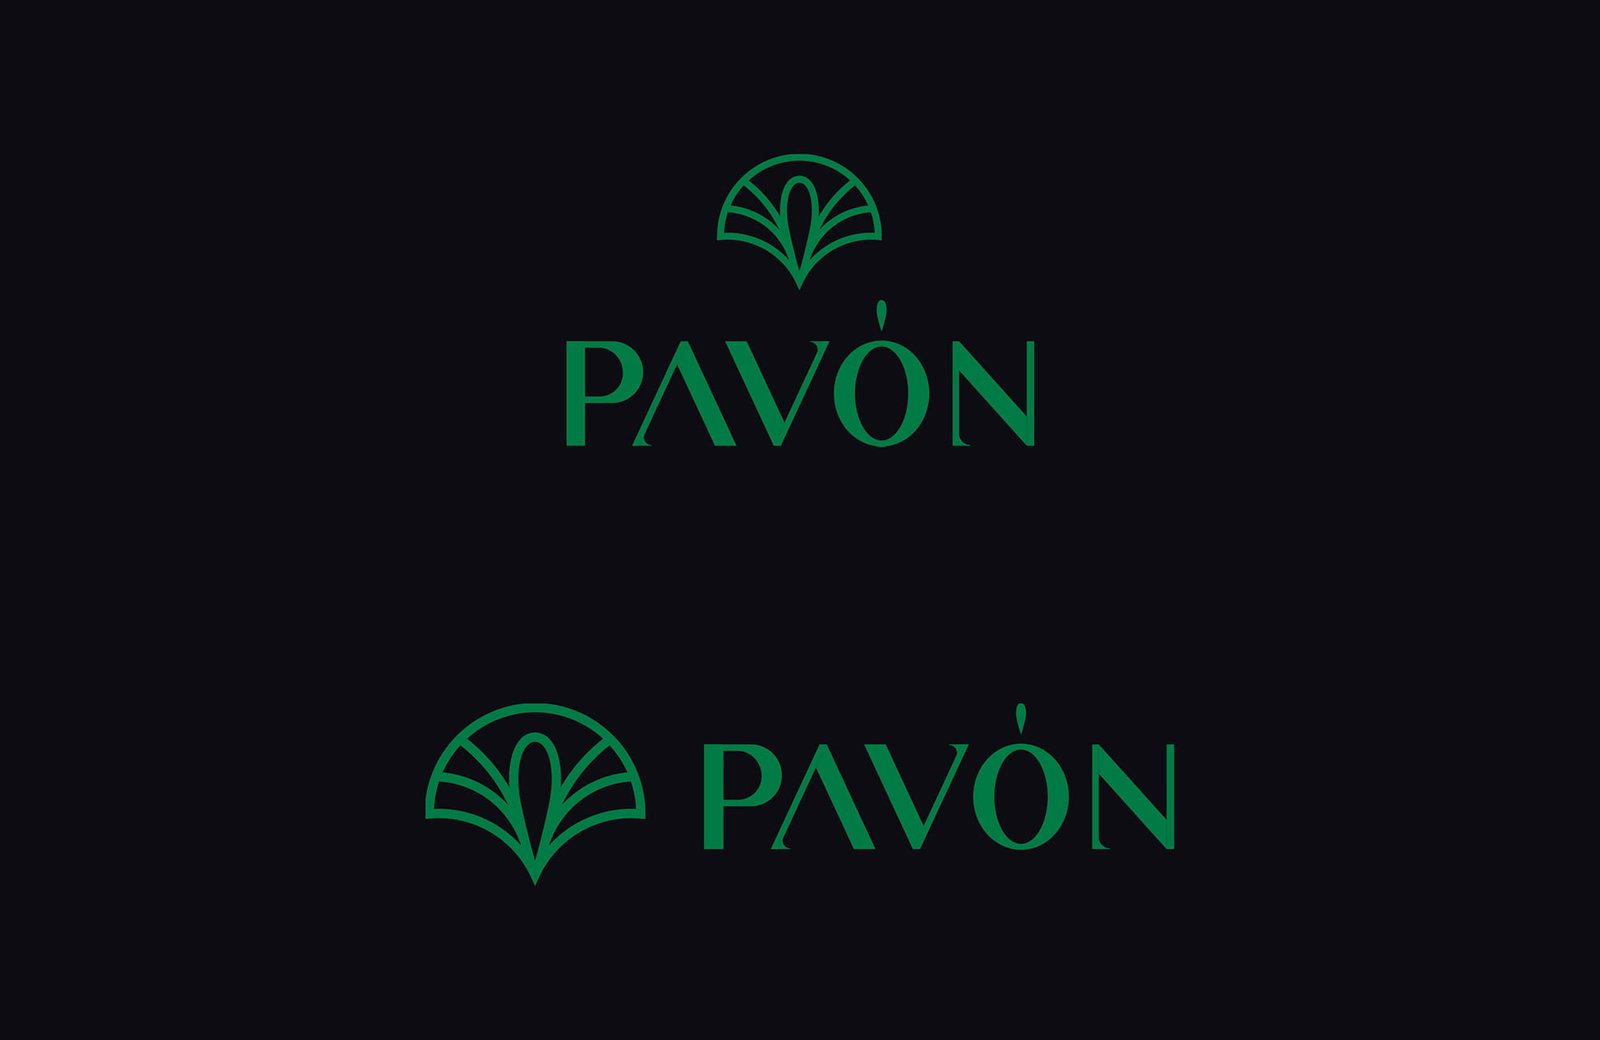 Pavon Watches logo Variations